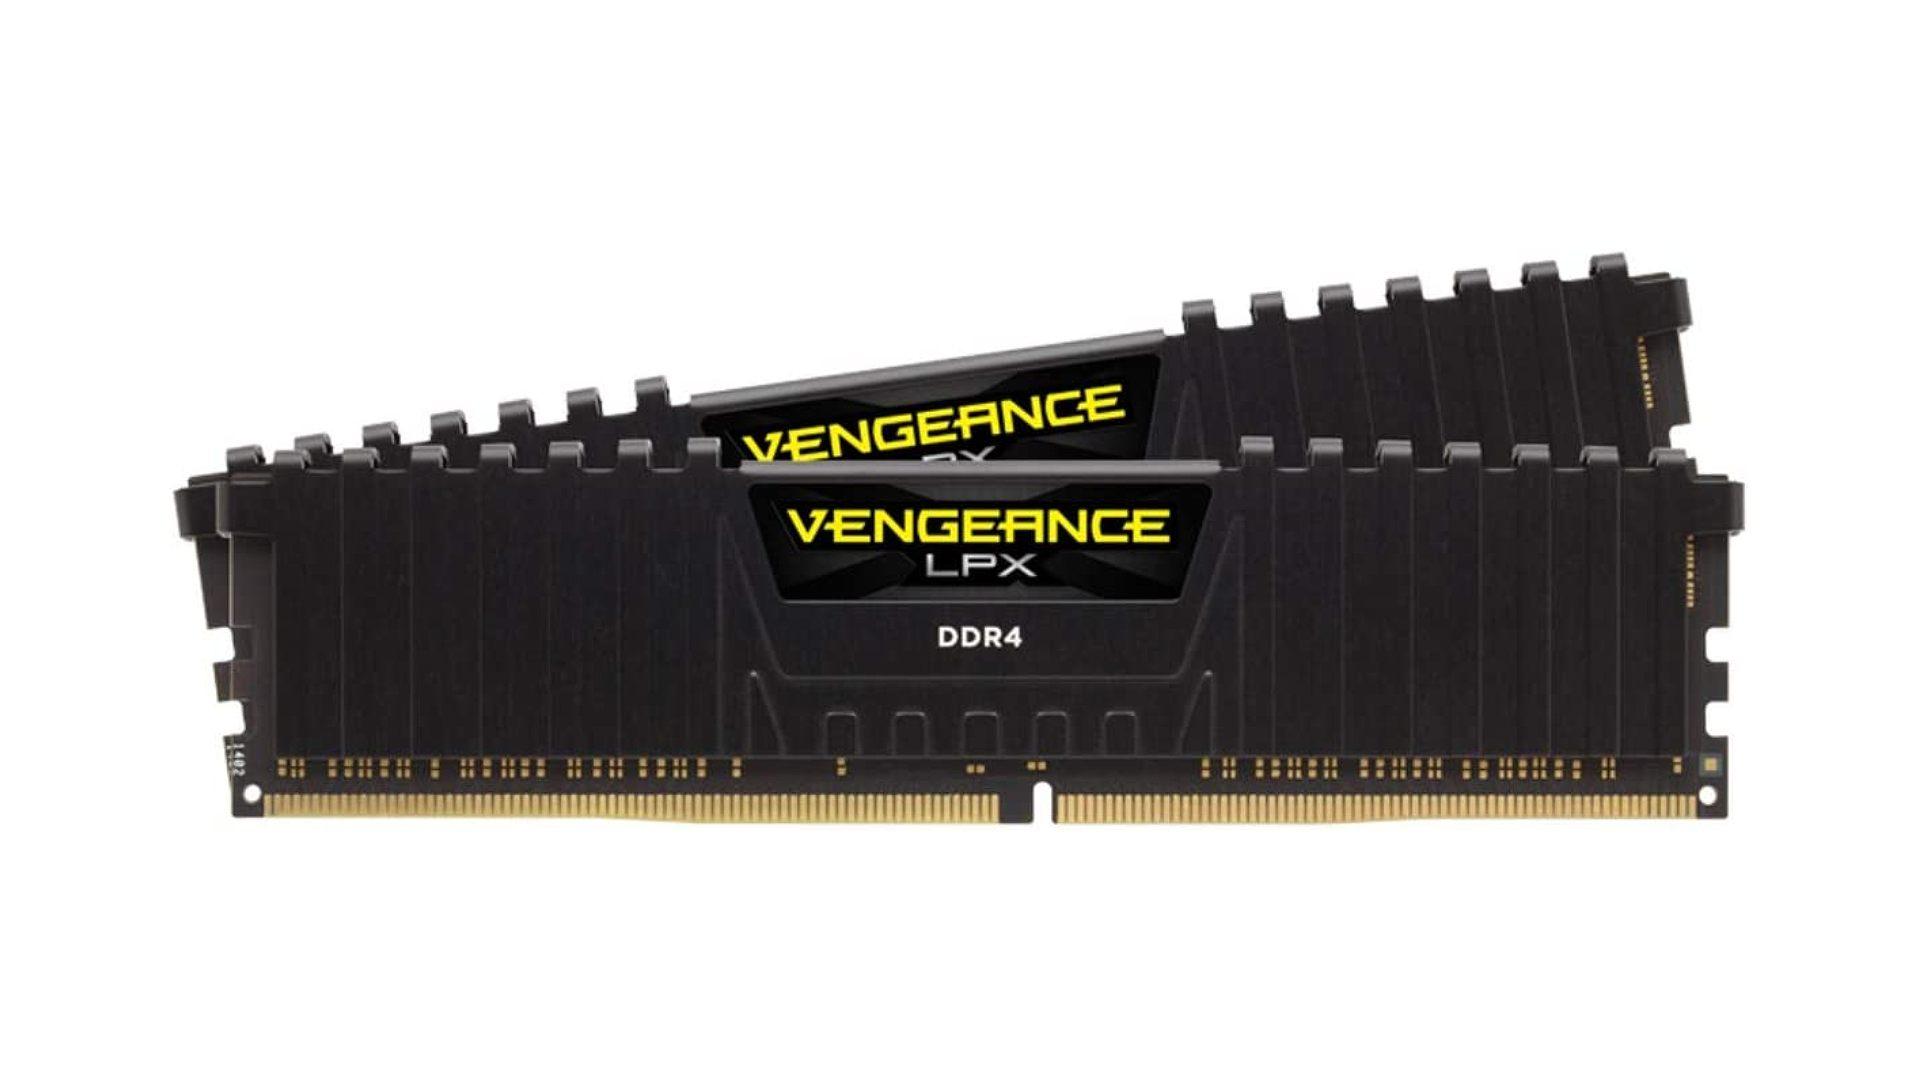 Corsair Vengeance LPX 32GB gaming RAM kit on white backdrop